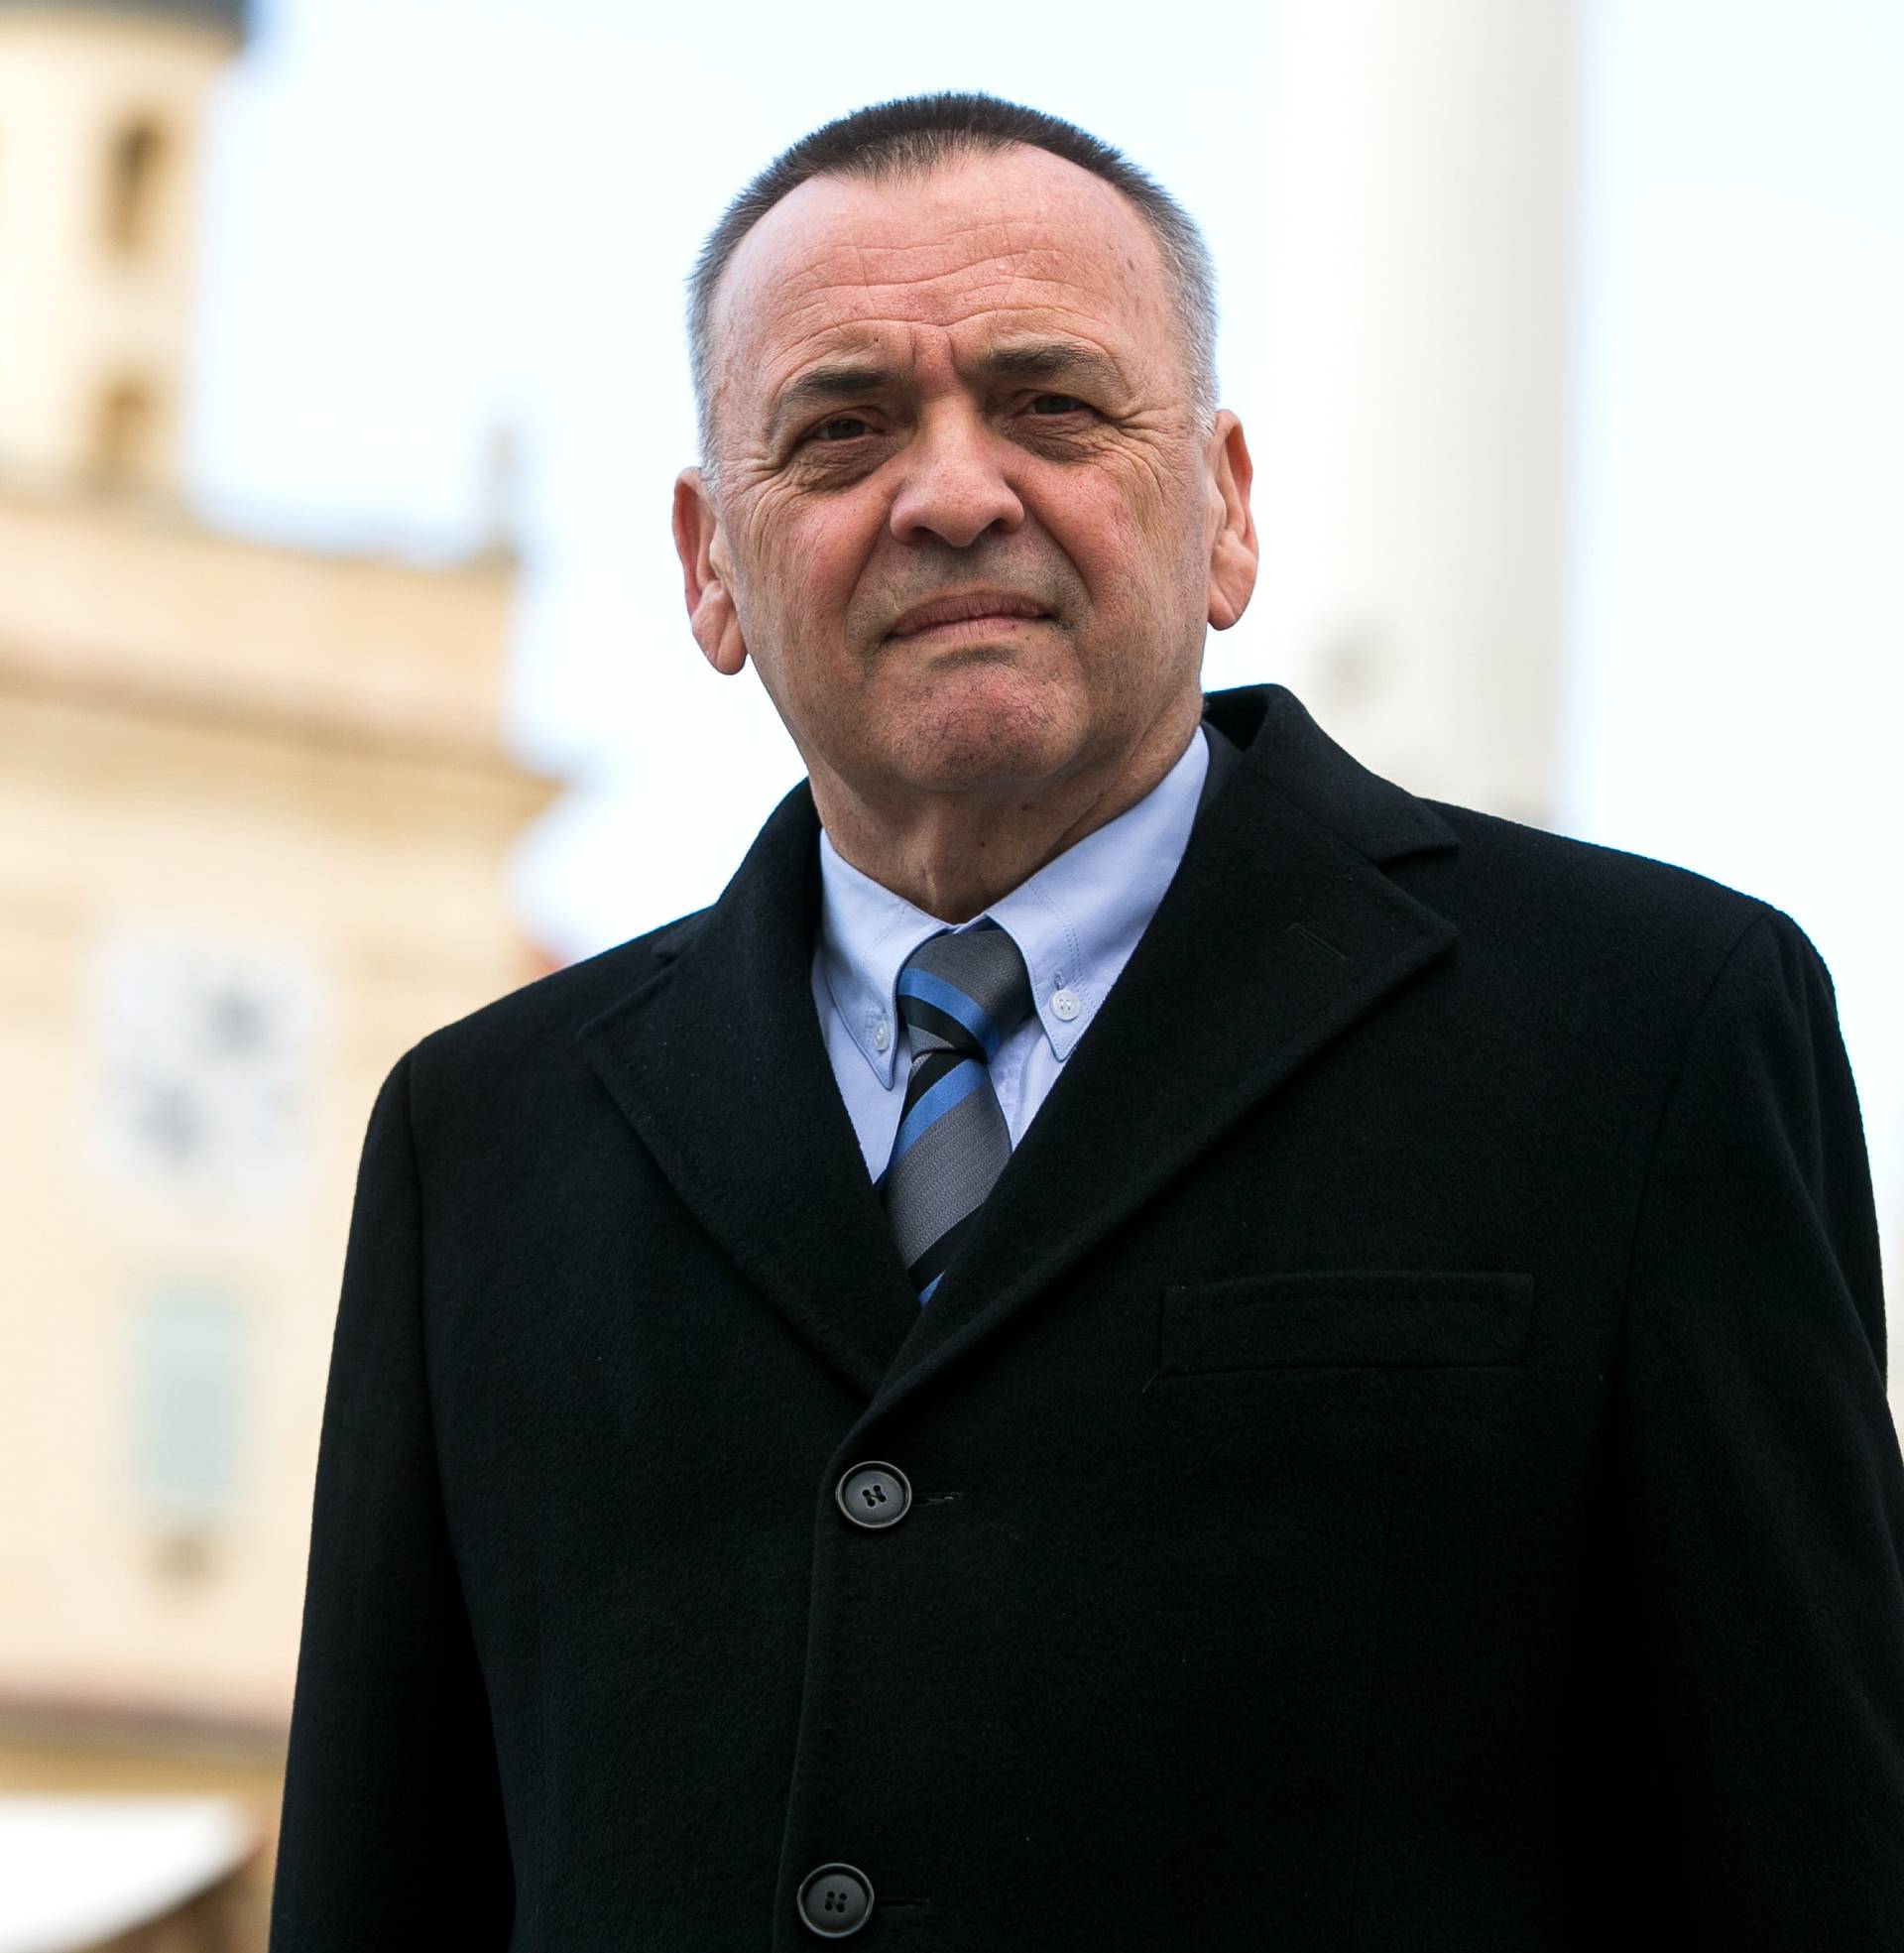 Gradonačelnik Vrkić ponovno hospitaliziran u osječkom KBC-u